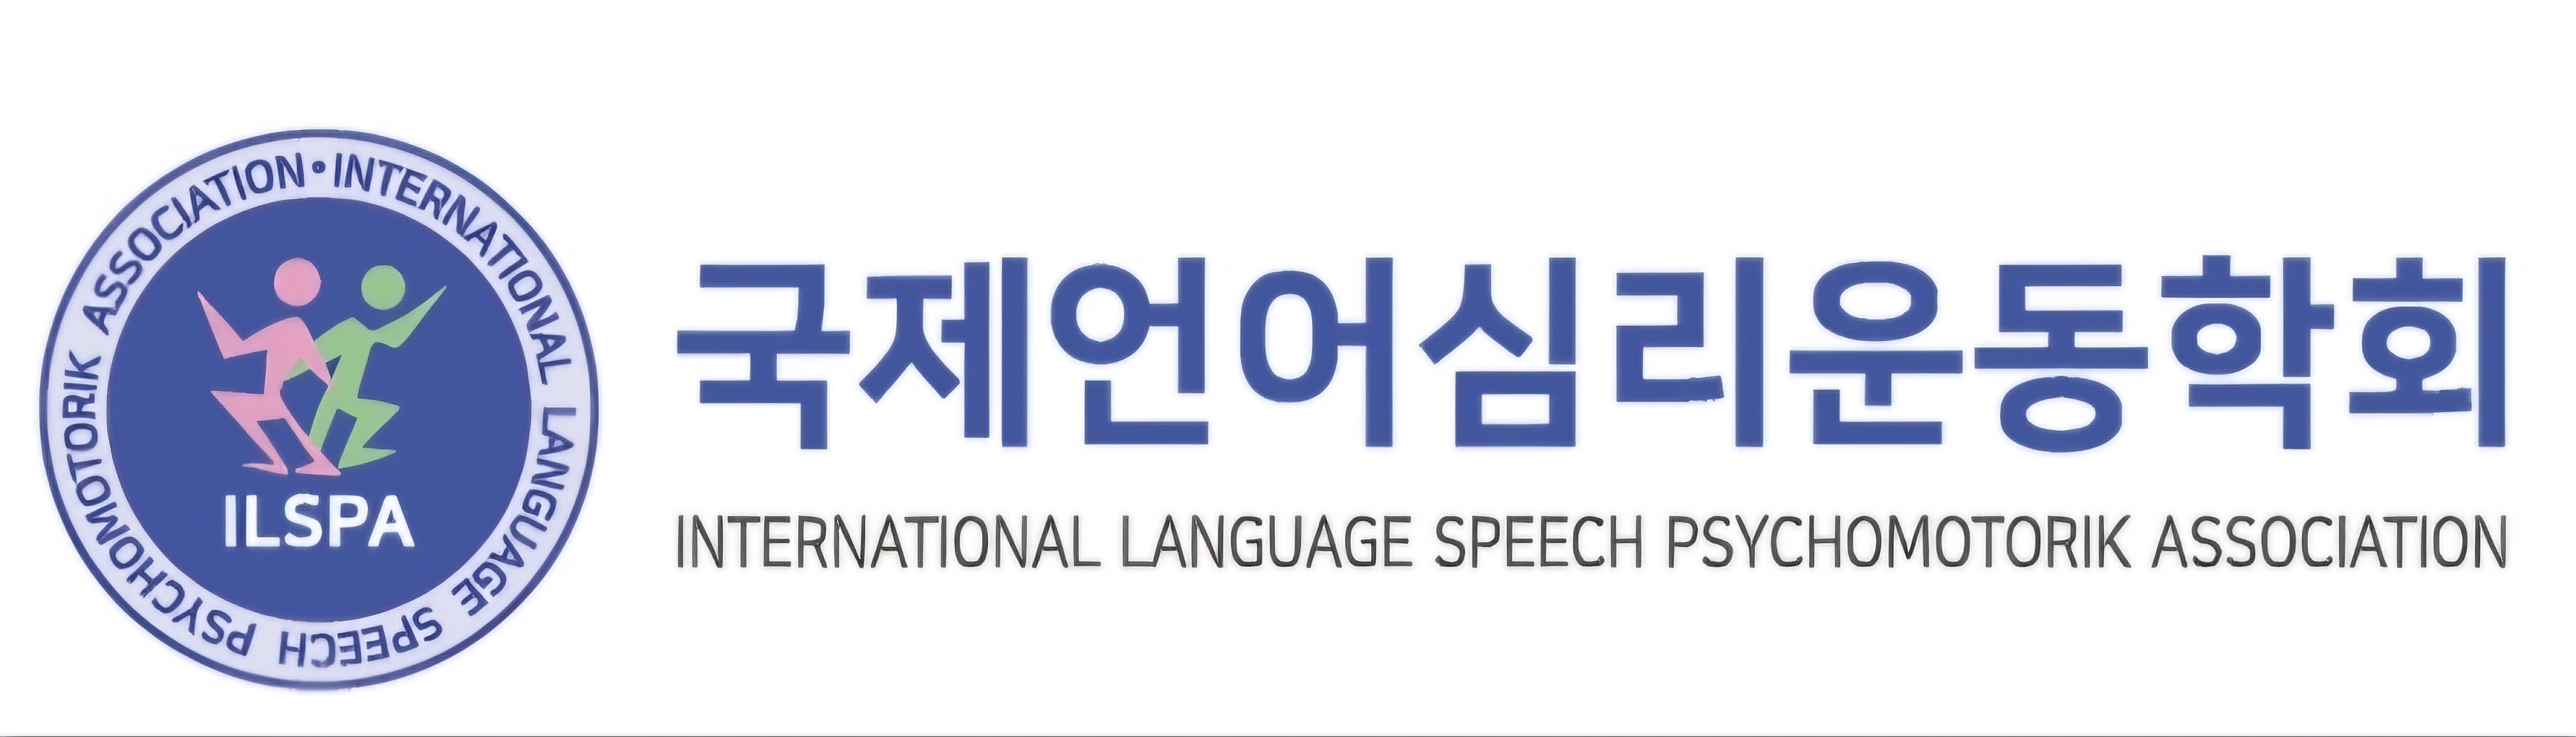 사회적협동조합 국제언어심리운동학회